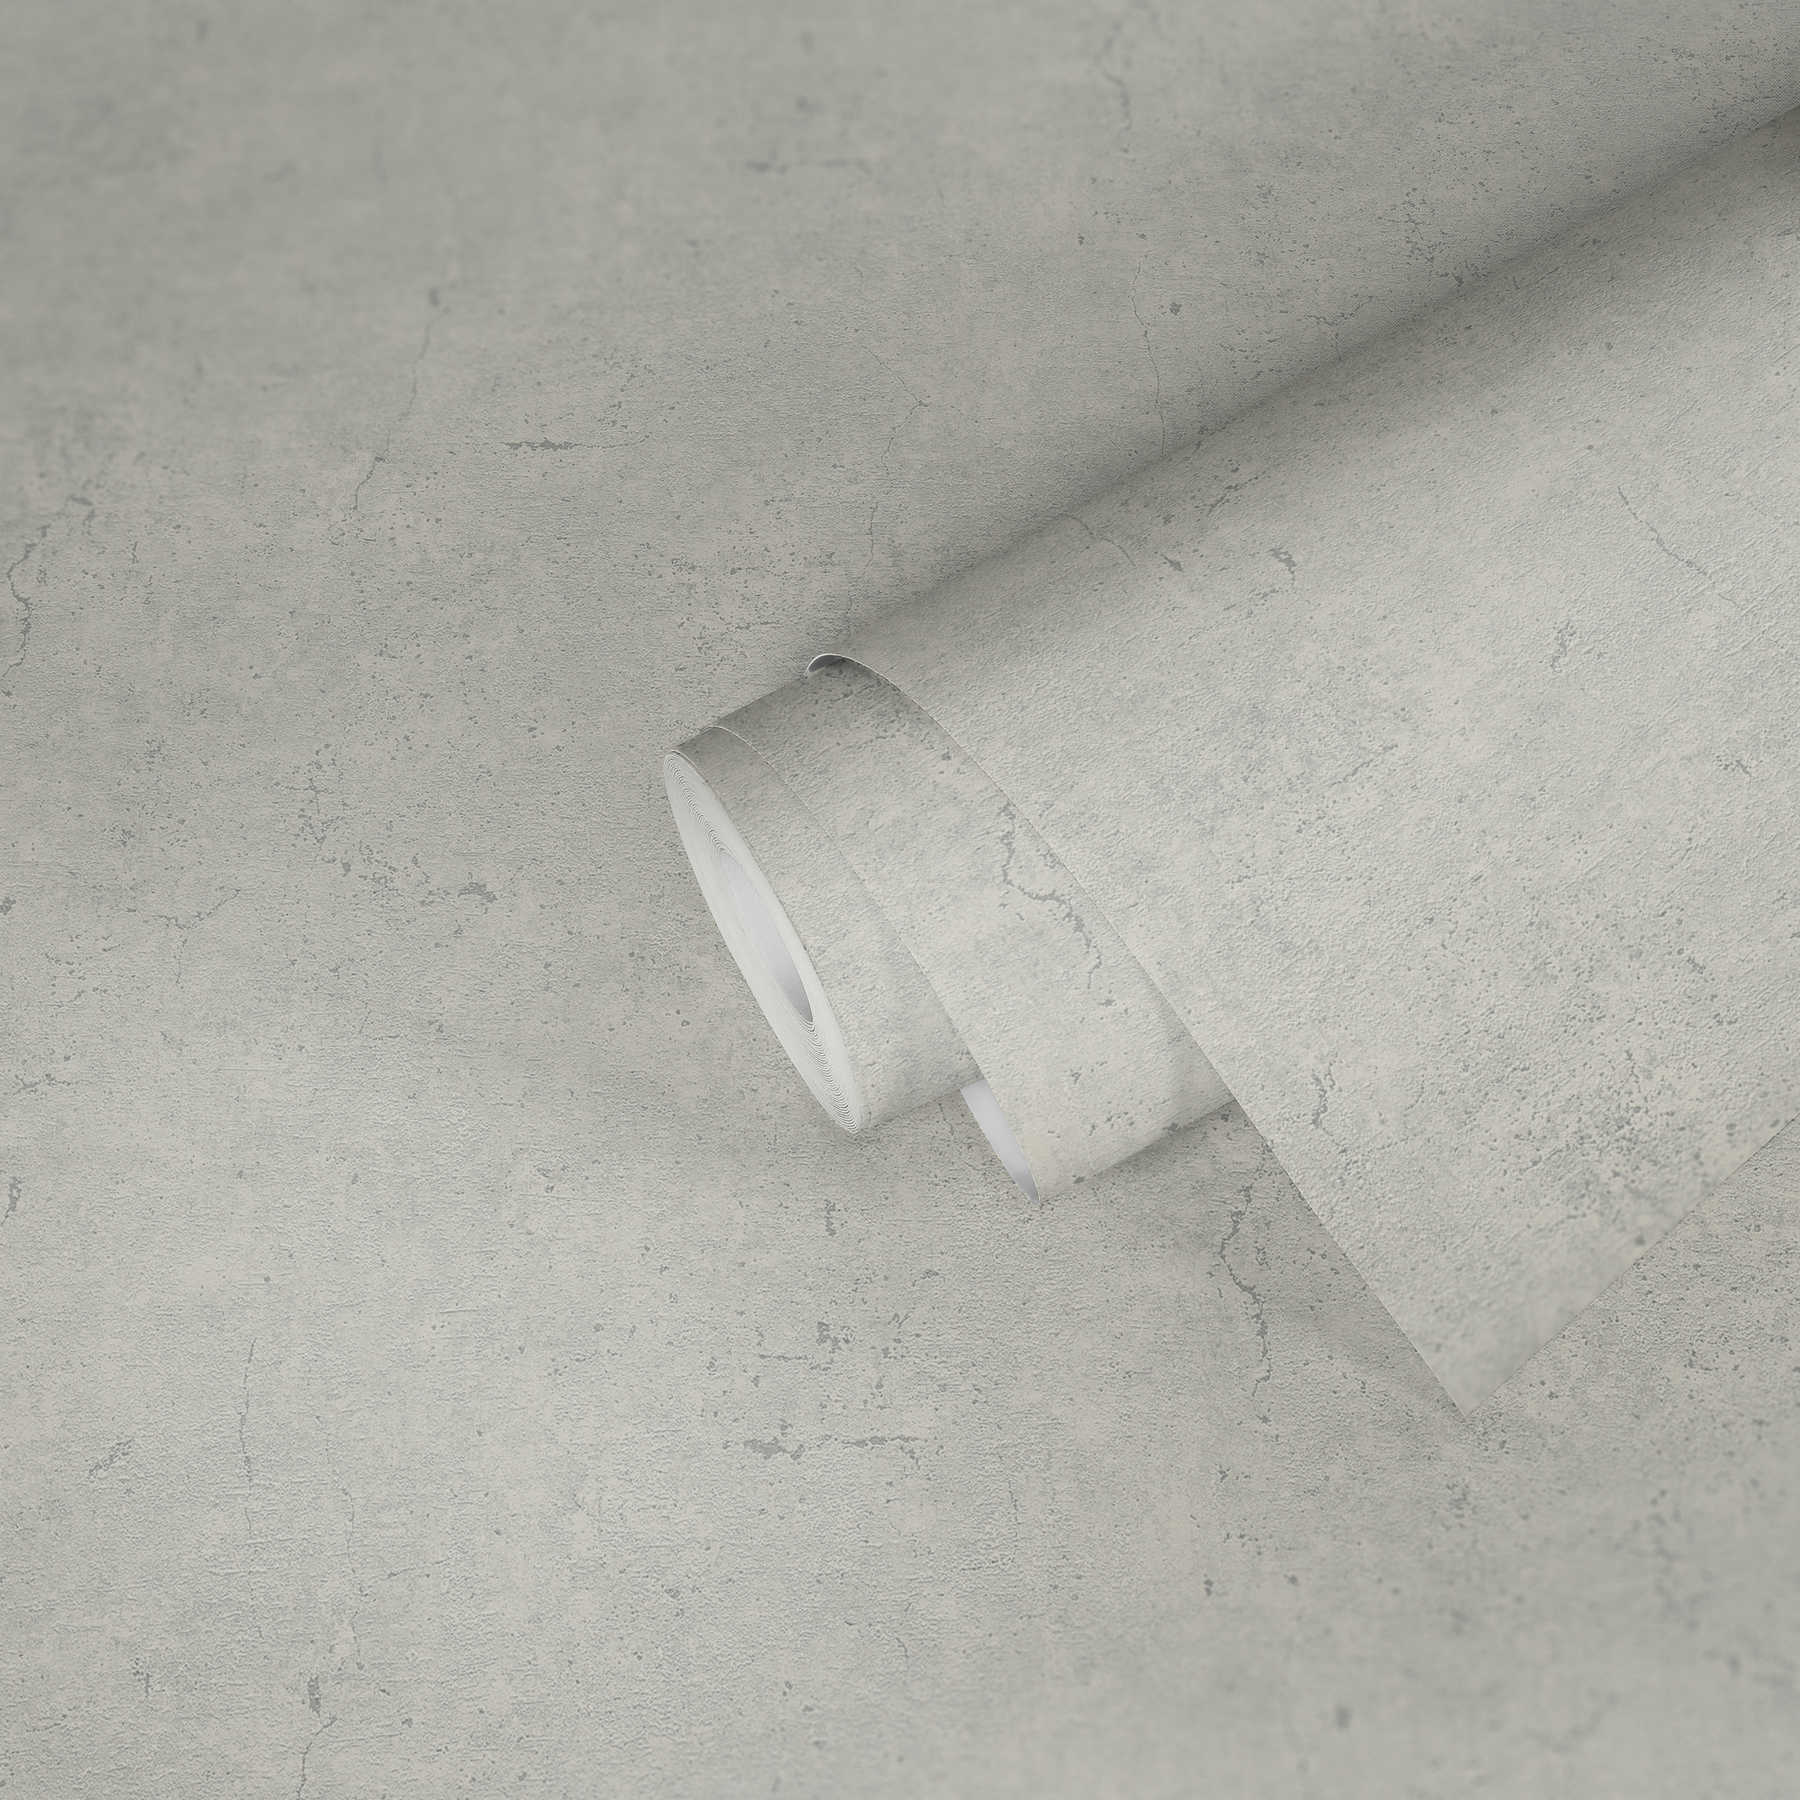             papel pintado aspecto rústico en estilo industrial - gris claro
        